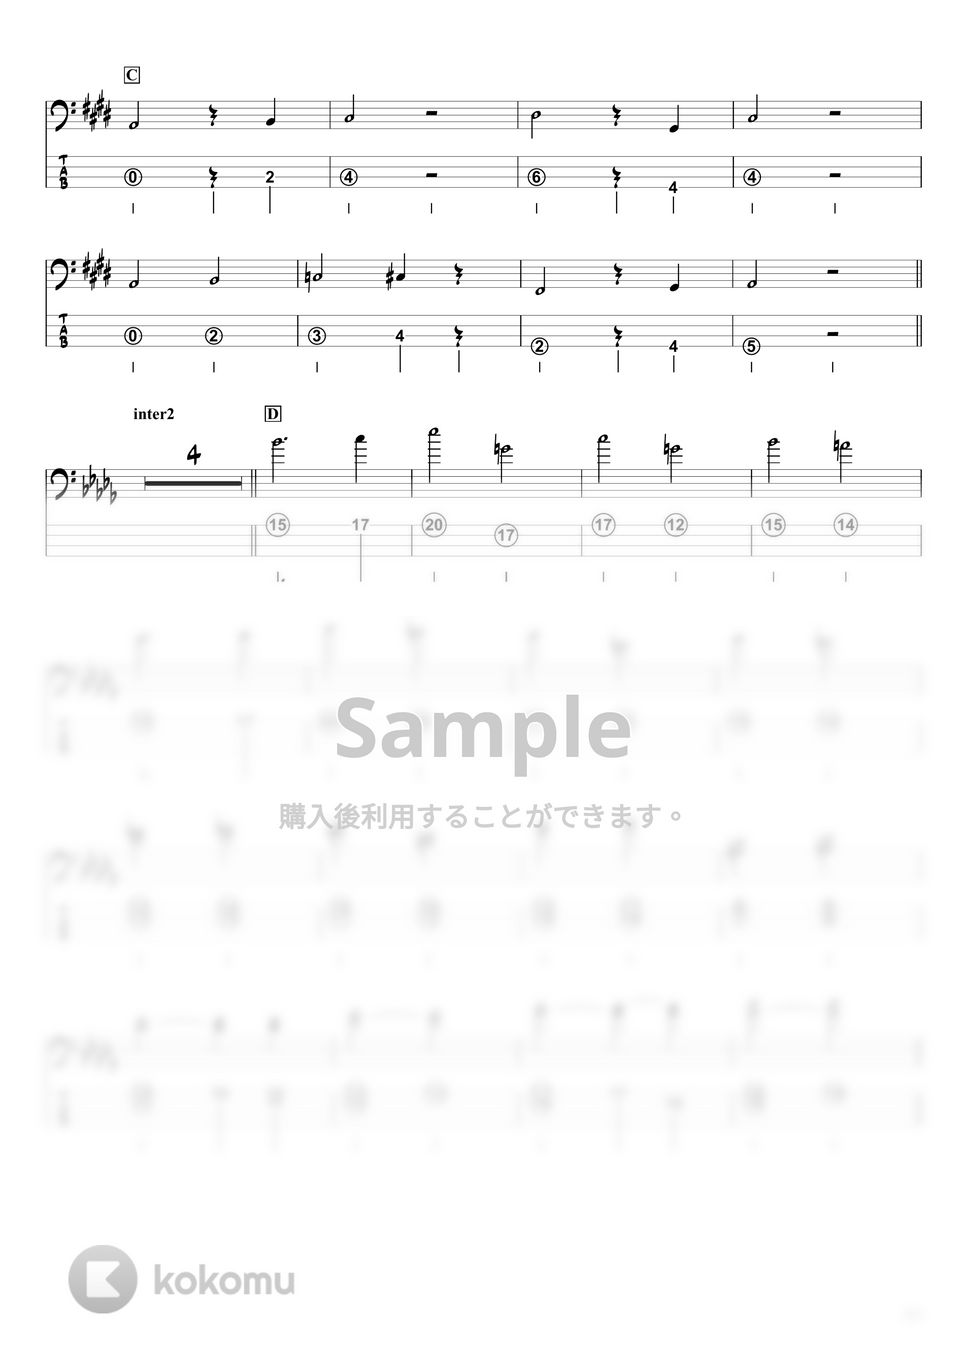 米津玄師 - M八七 (ベースTAB譜☆4弦ベース対応) by swbass